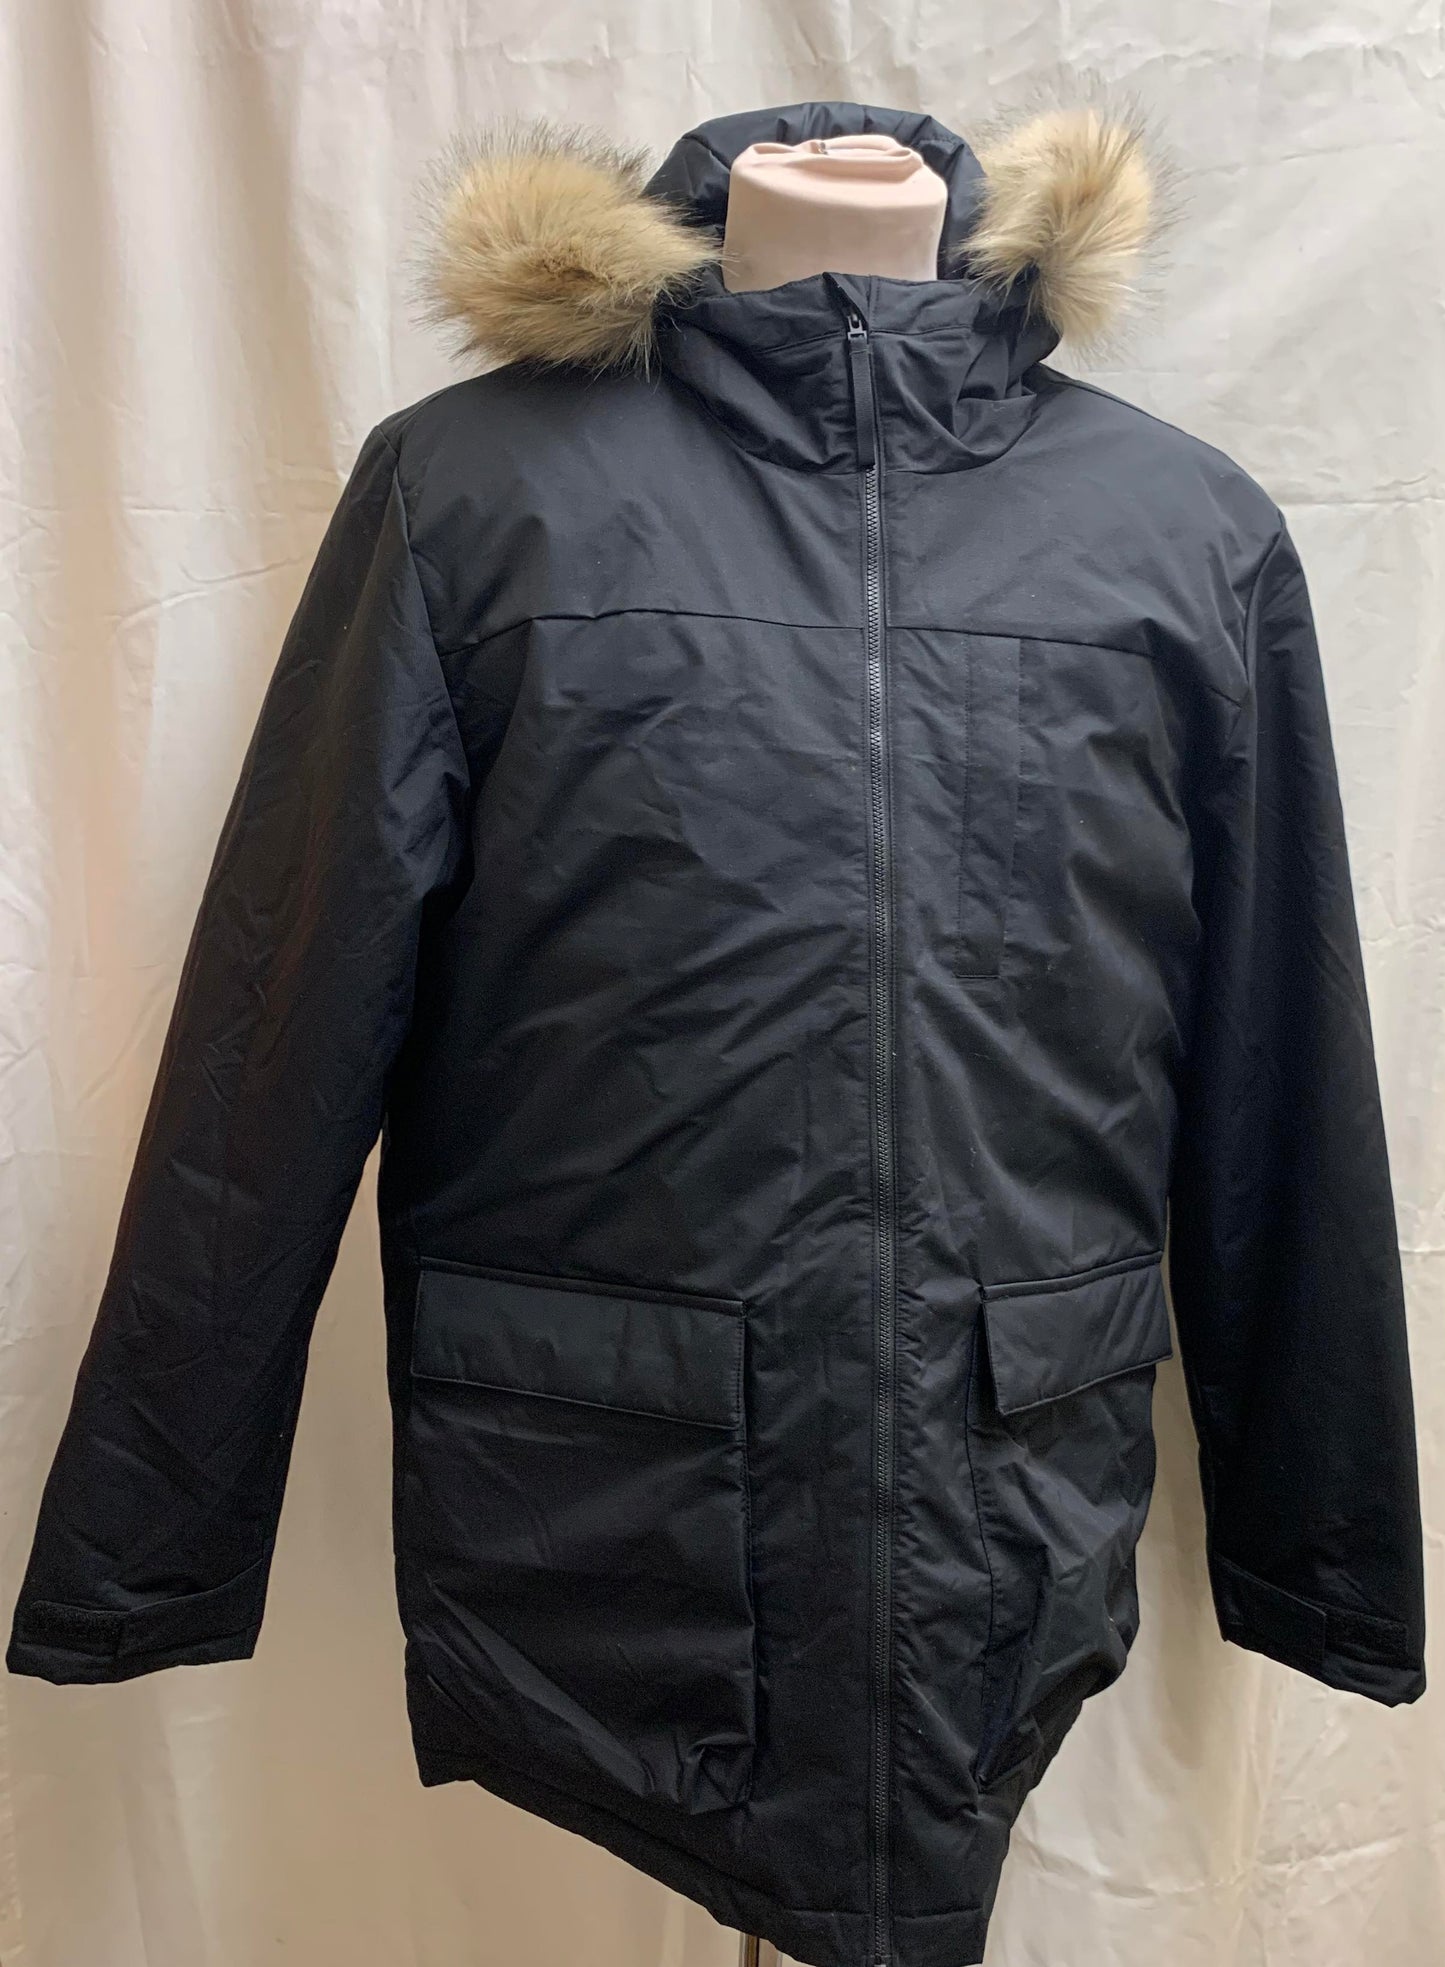 BNWT Adidas Black Hooded Parka Jacket RRP £140 Size XL